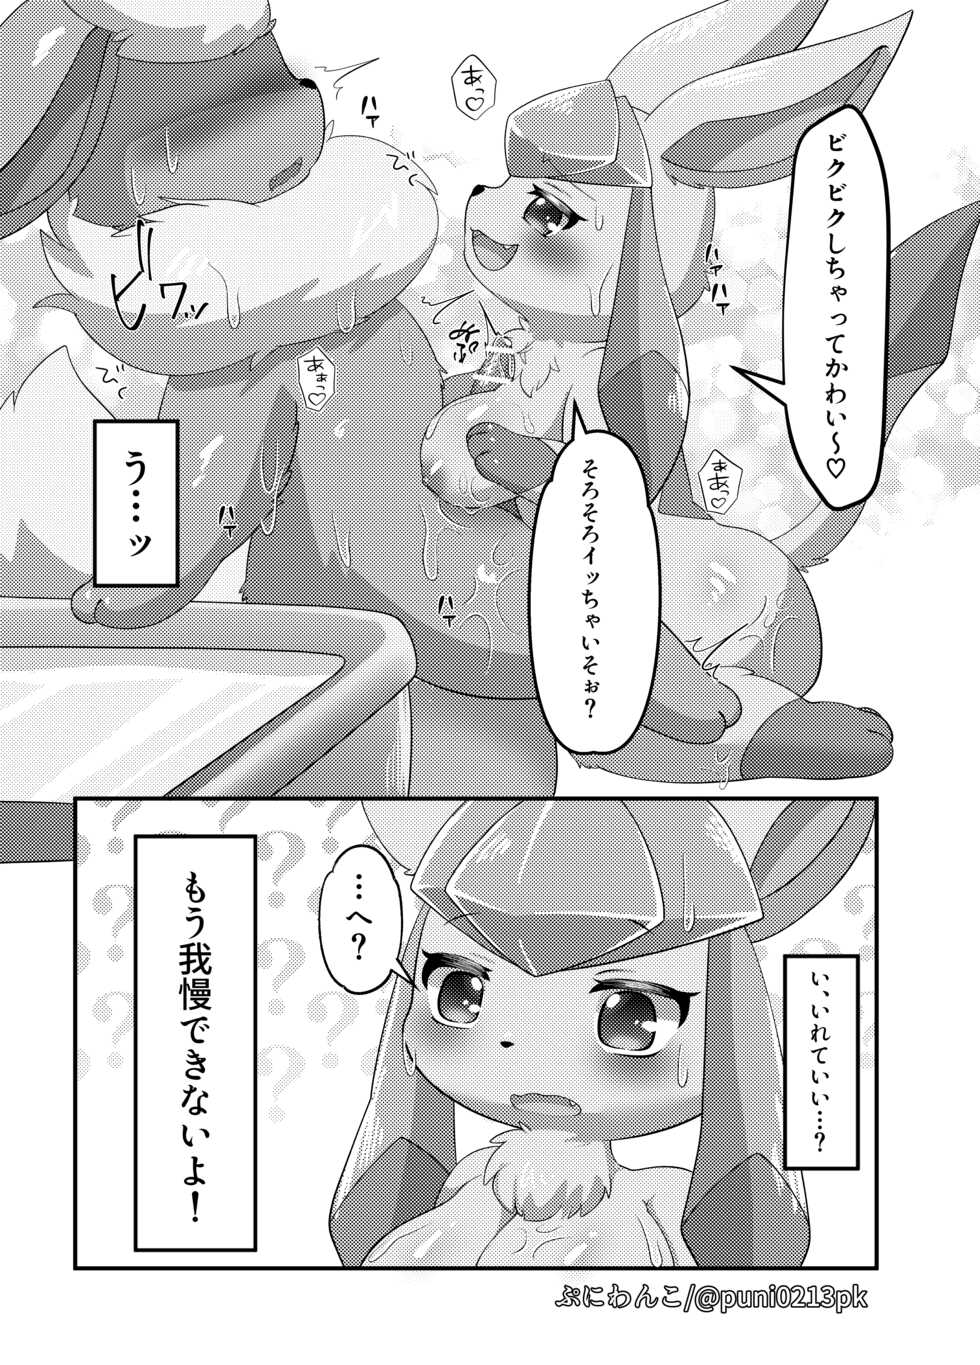 [ぷにわんこ] グレお風呂漫画 (ポケットモンスター) - Page 4